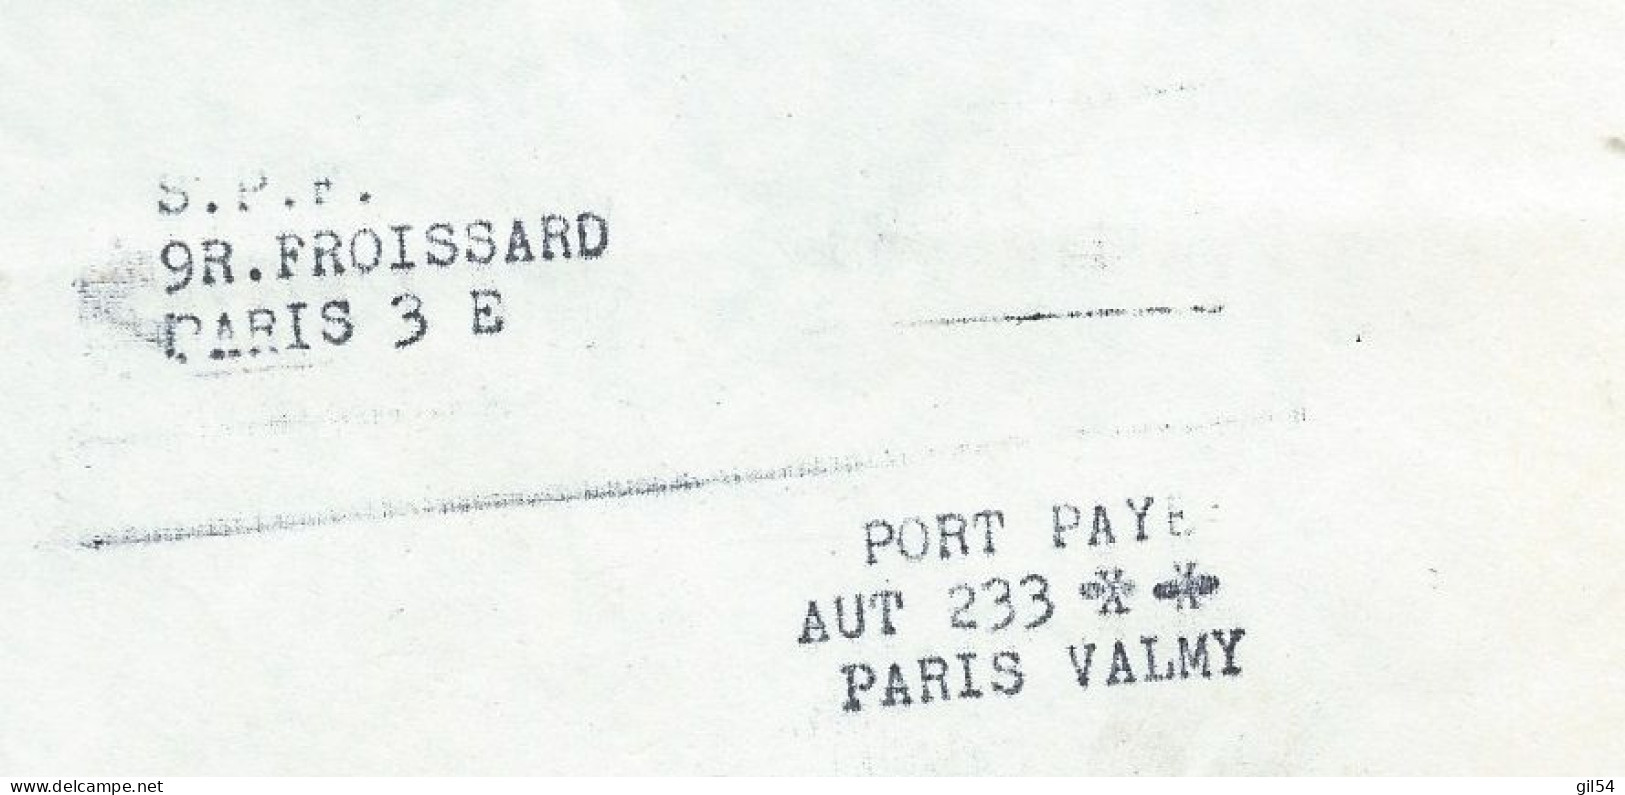 Lac En Port Paye Du Secours Populaire, Contenant Carnets Bon Du Soleil Pour Enfants Et Handicapes 19/05/1972  MALB13705 - Historische Dokumente